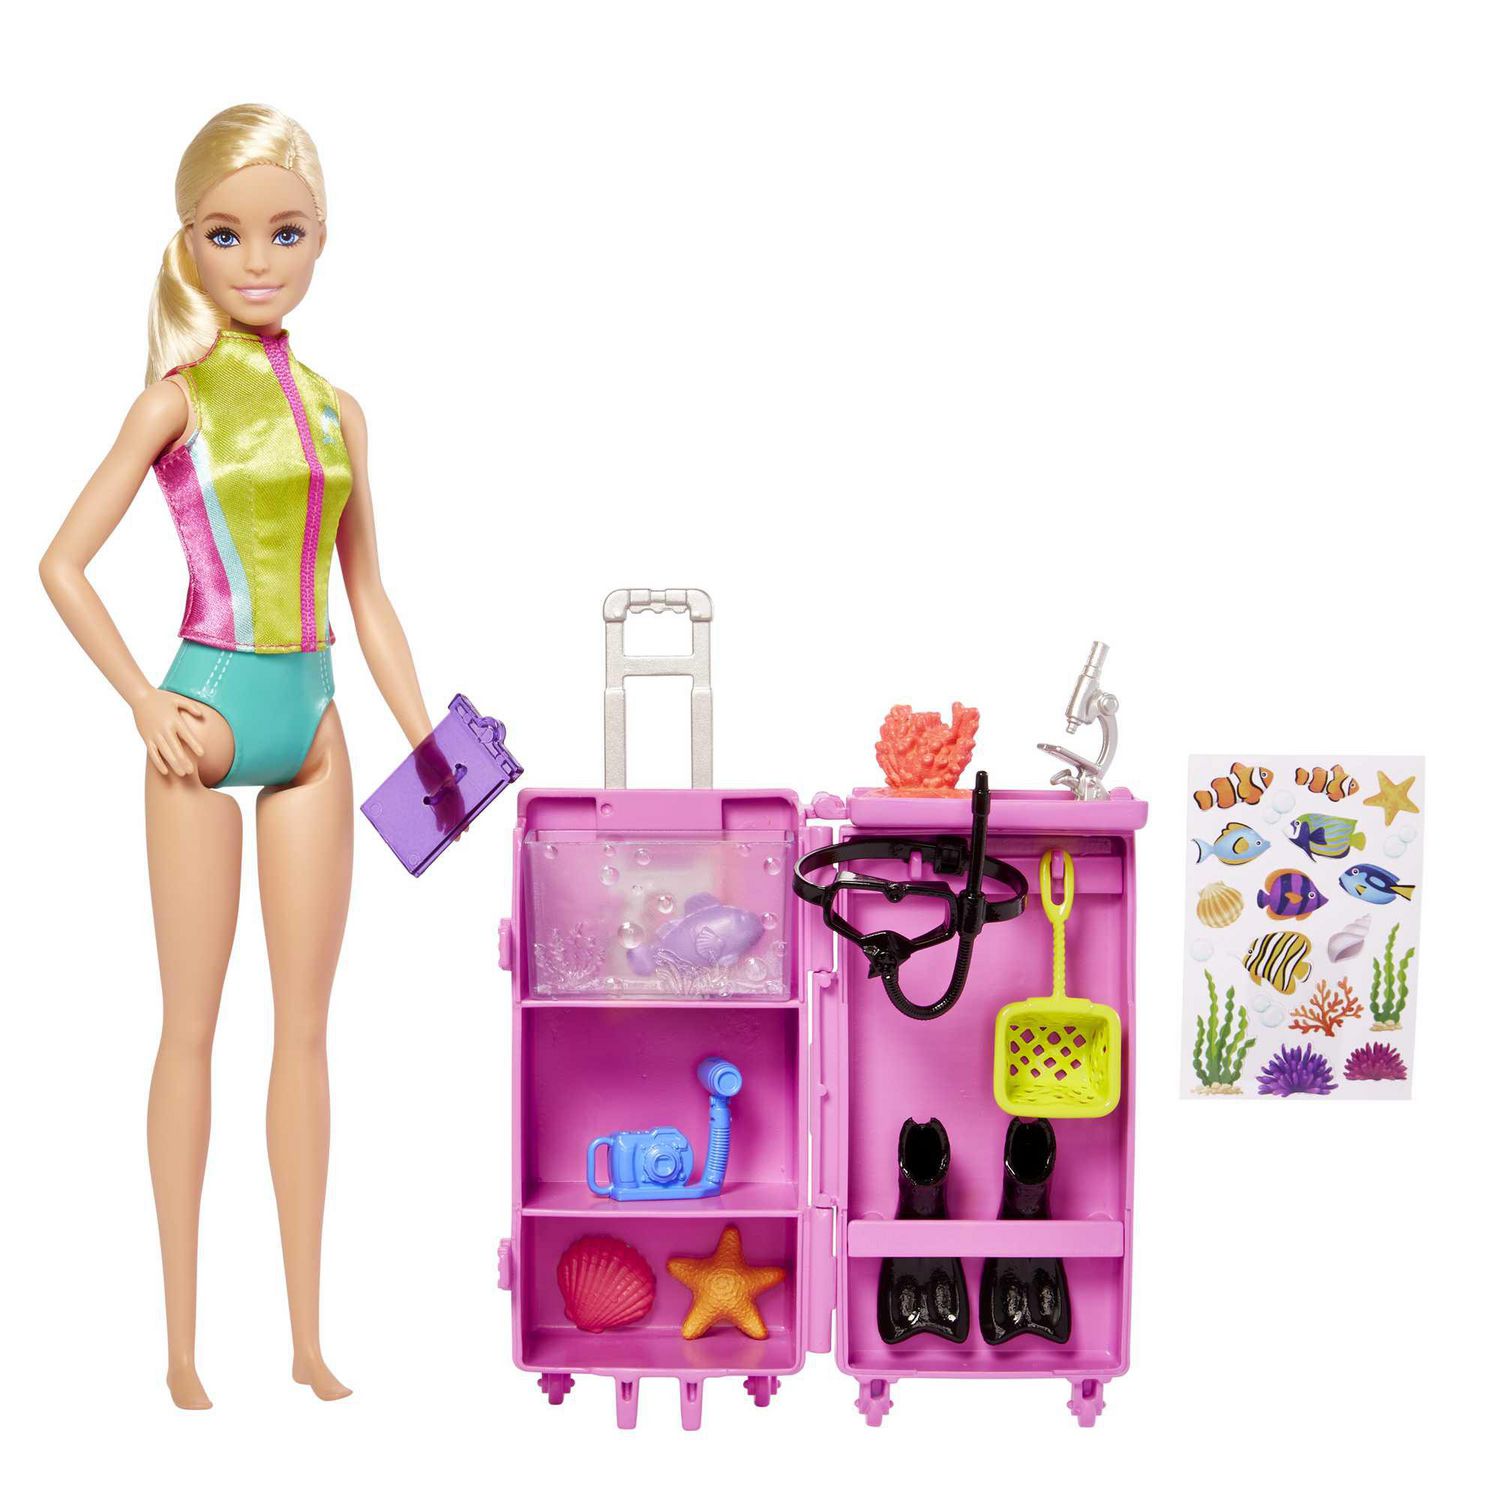 Toys, Barbie Onthego Storage Organizer Desk